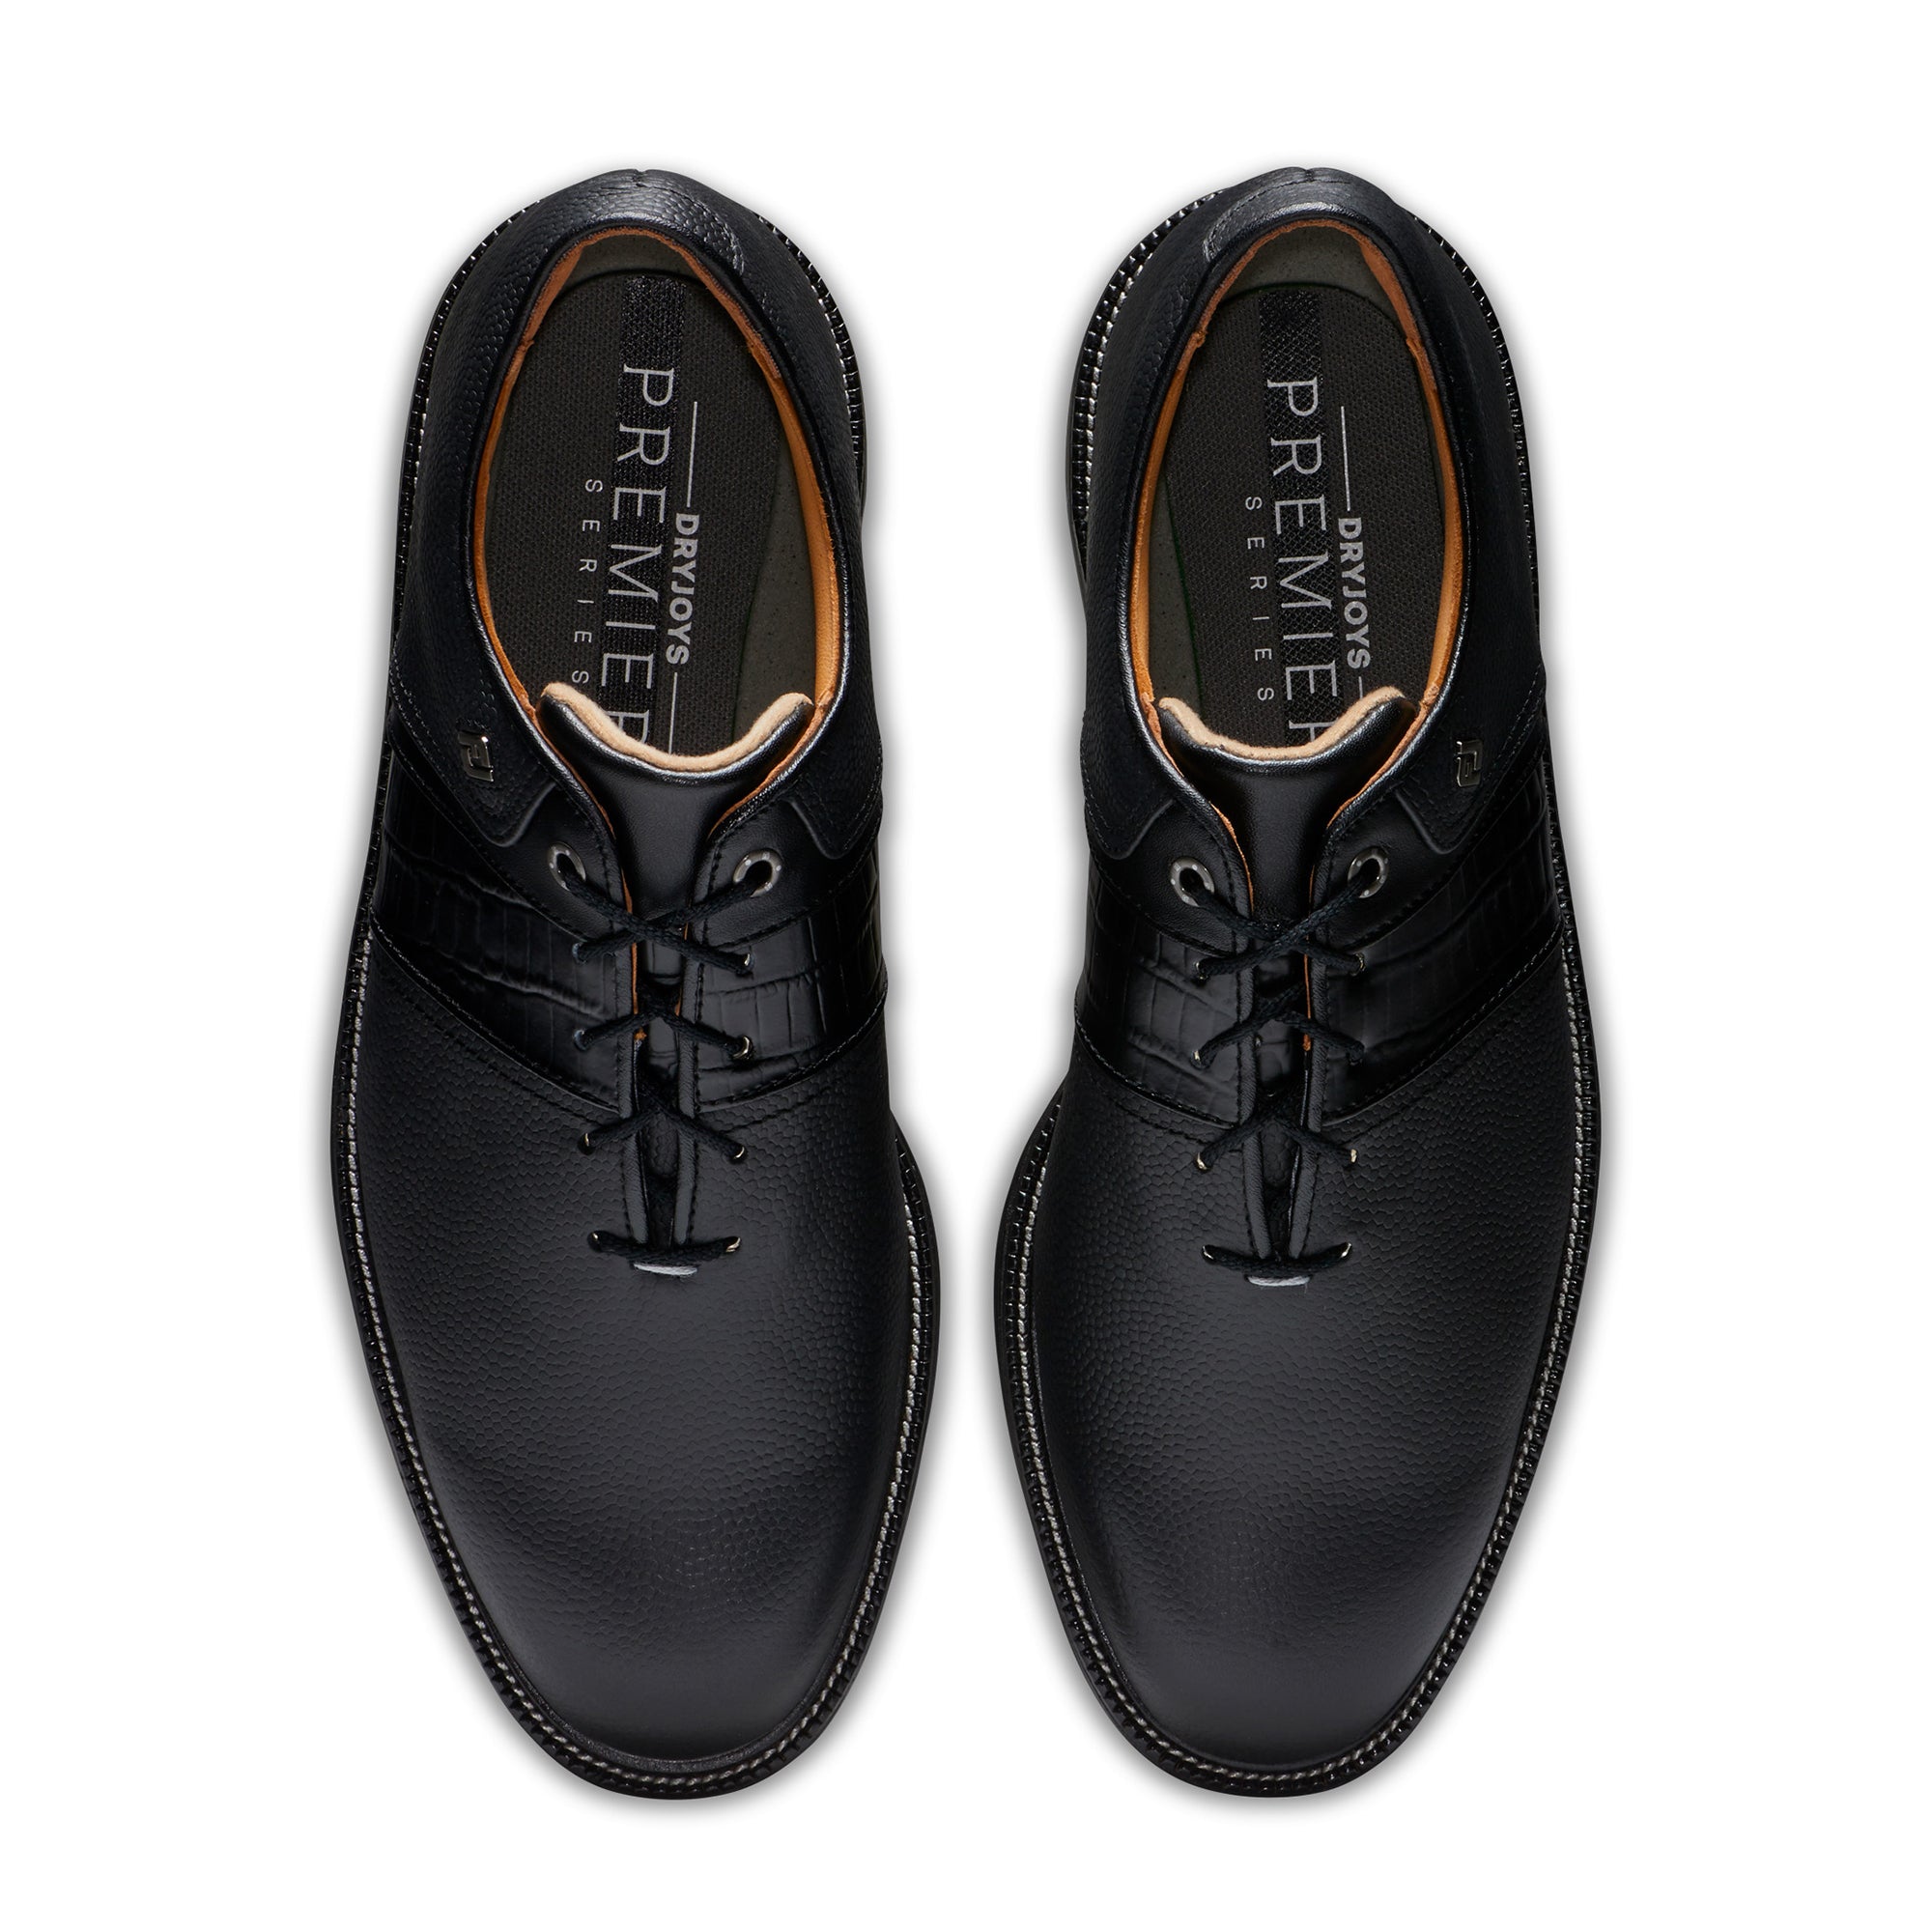 footjoy-premiere-series-packard-golf-shoes-53924-black